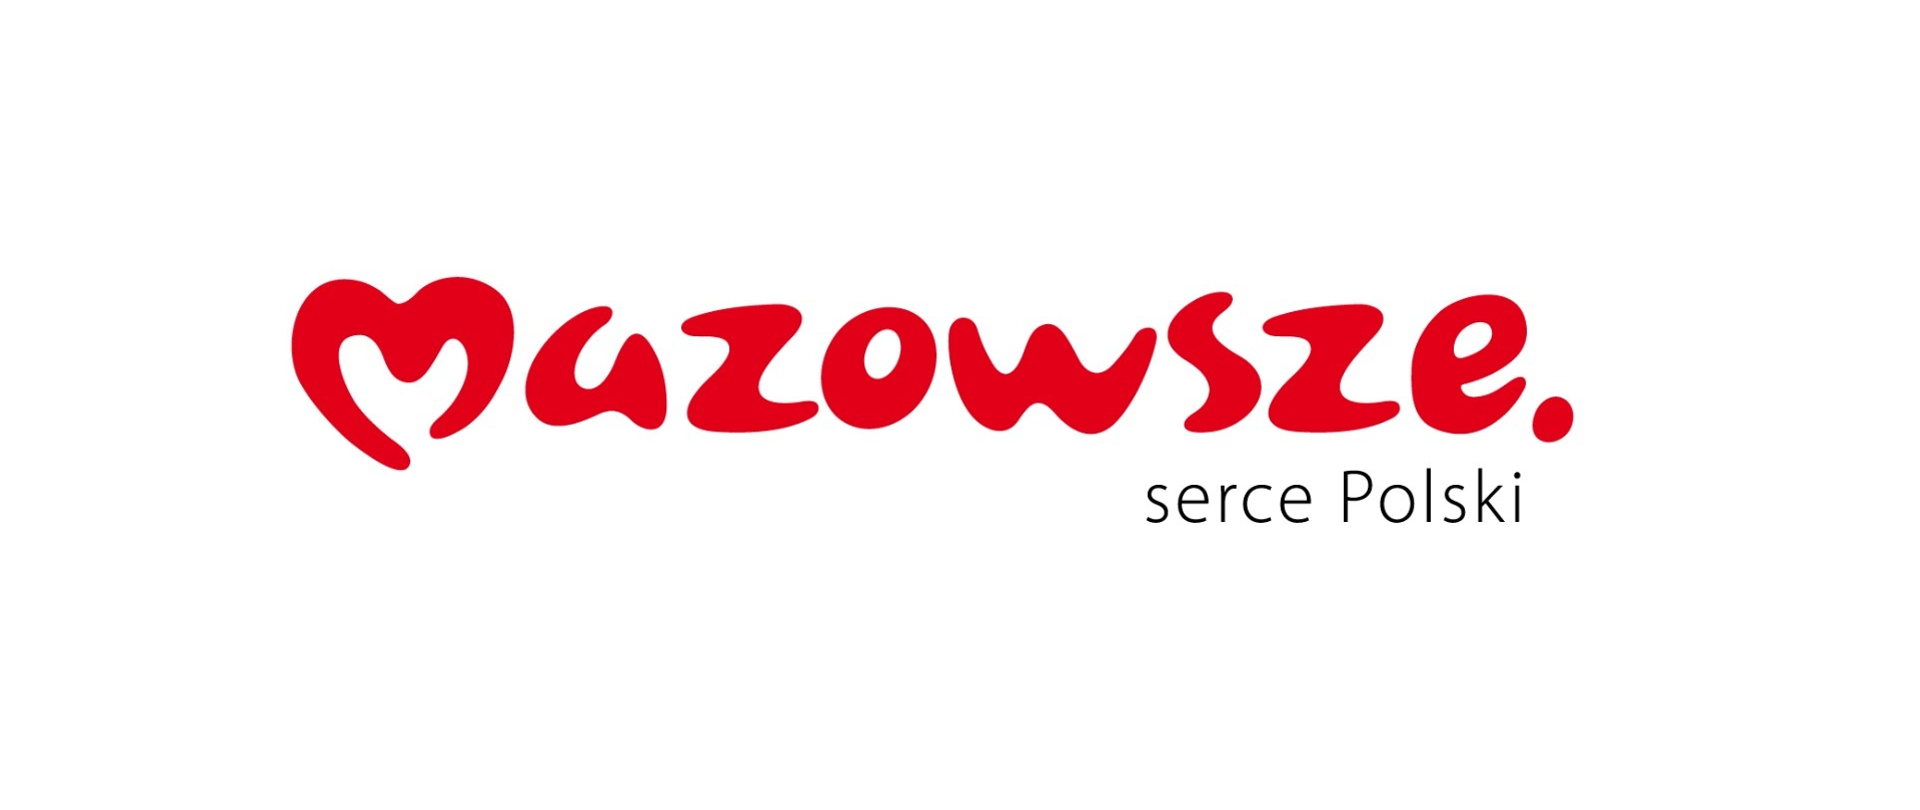 Mazowsze serce Polski